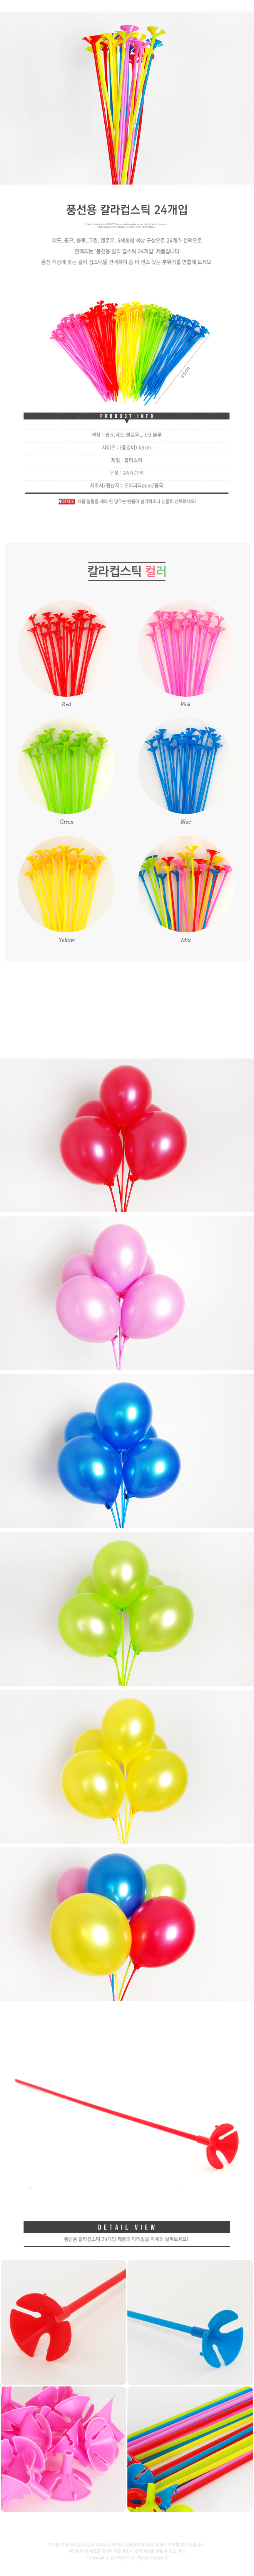 balloonst24p_roll_copy3.jpg